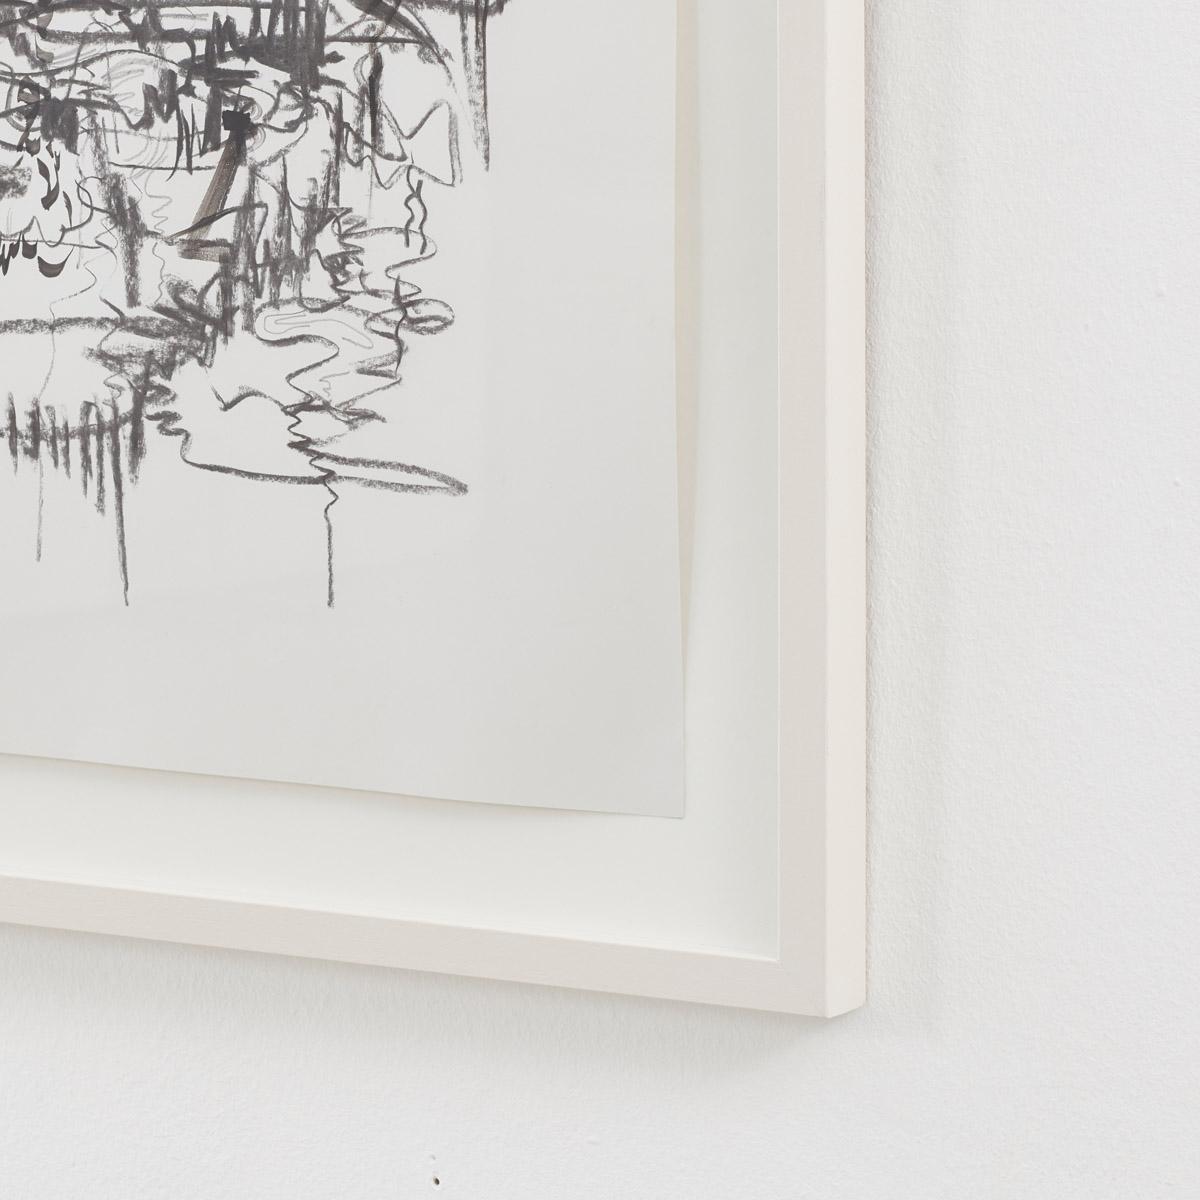 Kohlezeichnung der in Poole lebenden Künstlerin Sharon Pearce, die eine abstrakte expressionistische Ästhetik verkörpert. Abstrakte Formen und Zeichen verschmelzen zu verschlungenen Oberflächen.